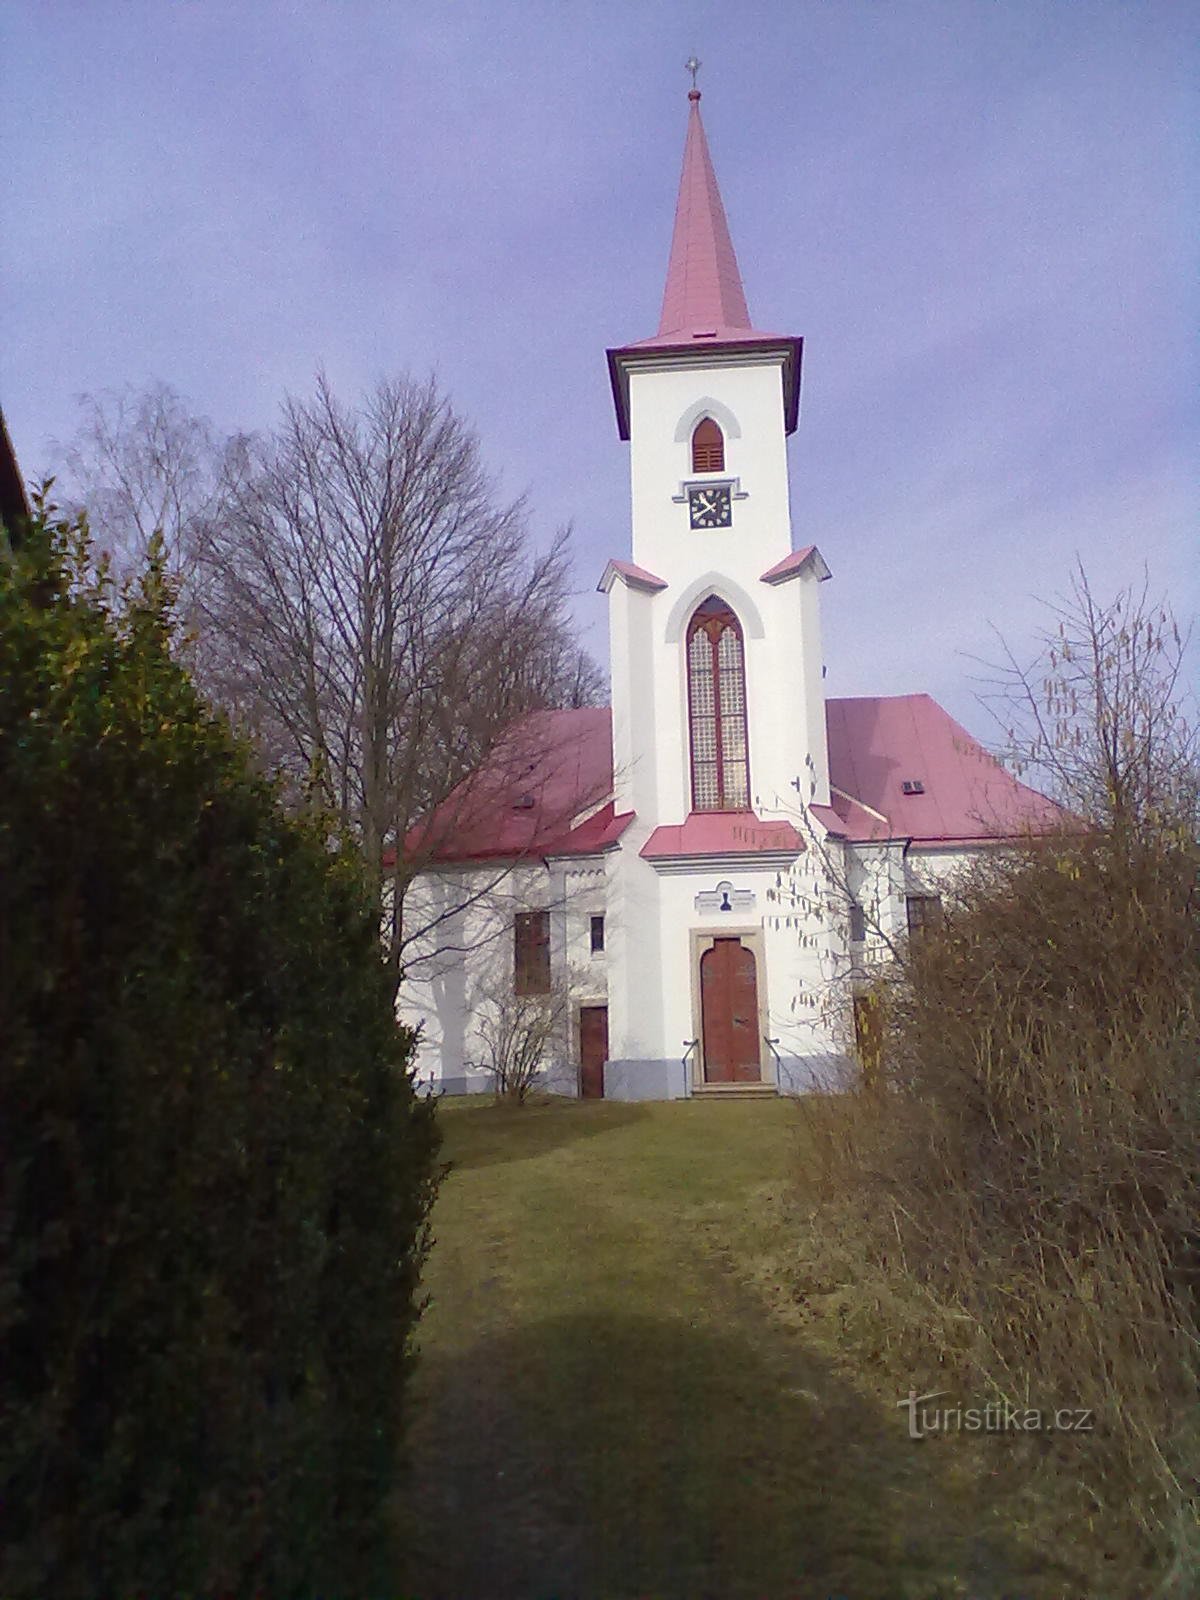 2. Evangelisk kyrka i Moravč från 1785.